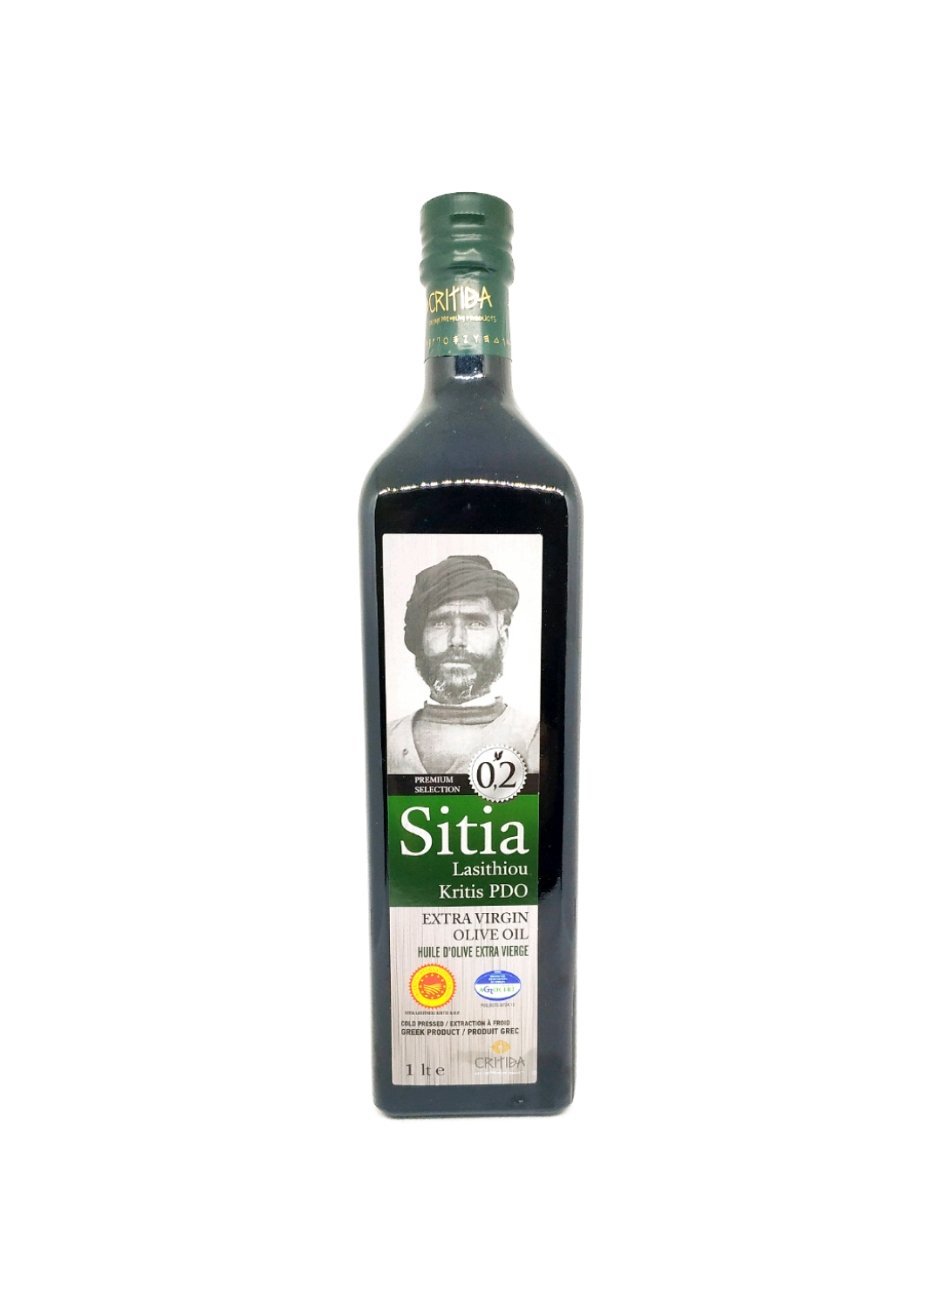 Produits orientaux en ligne: Sitia - Huile d'olive extra vierge 0.2